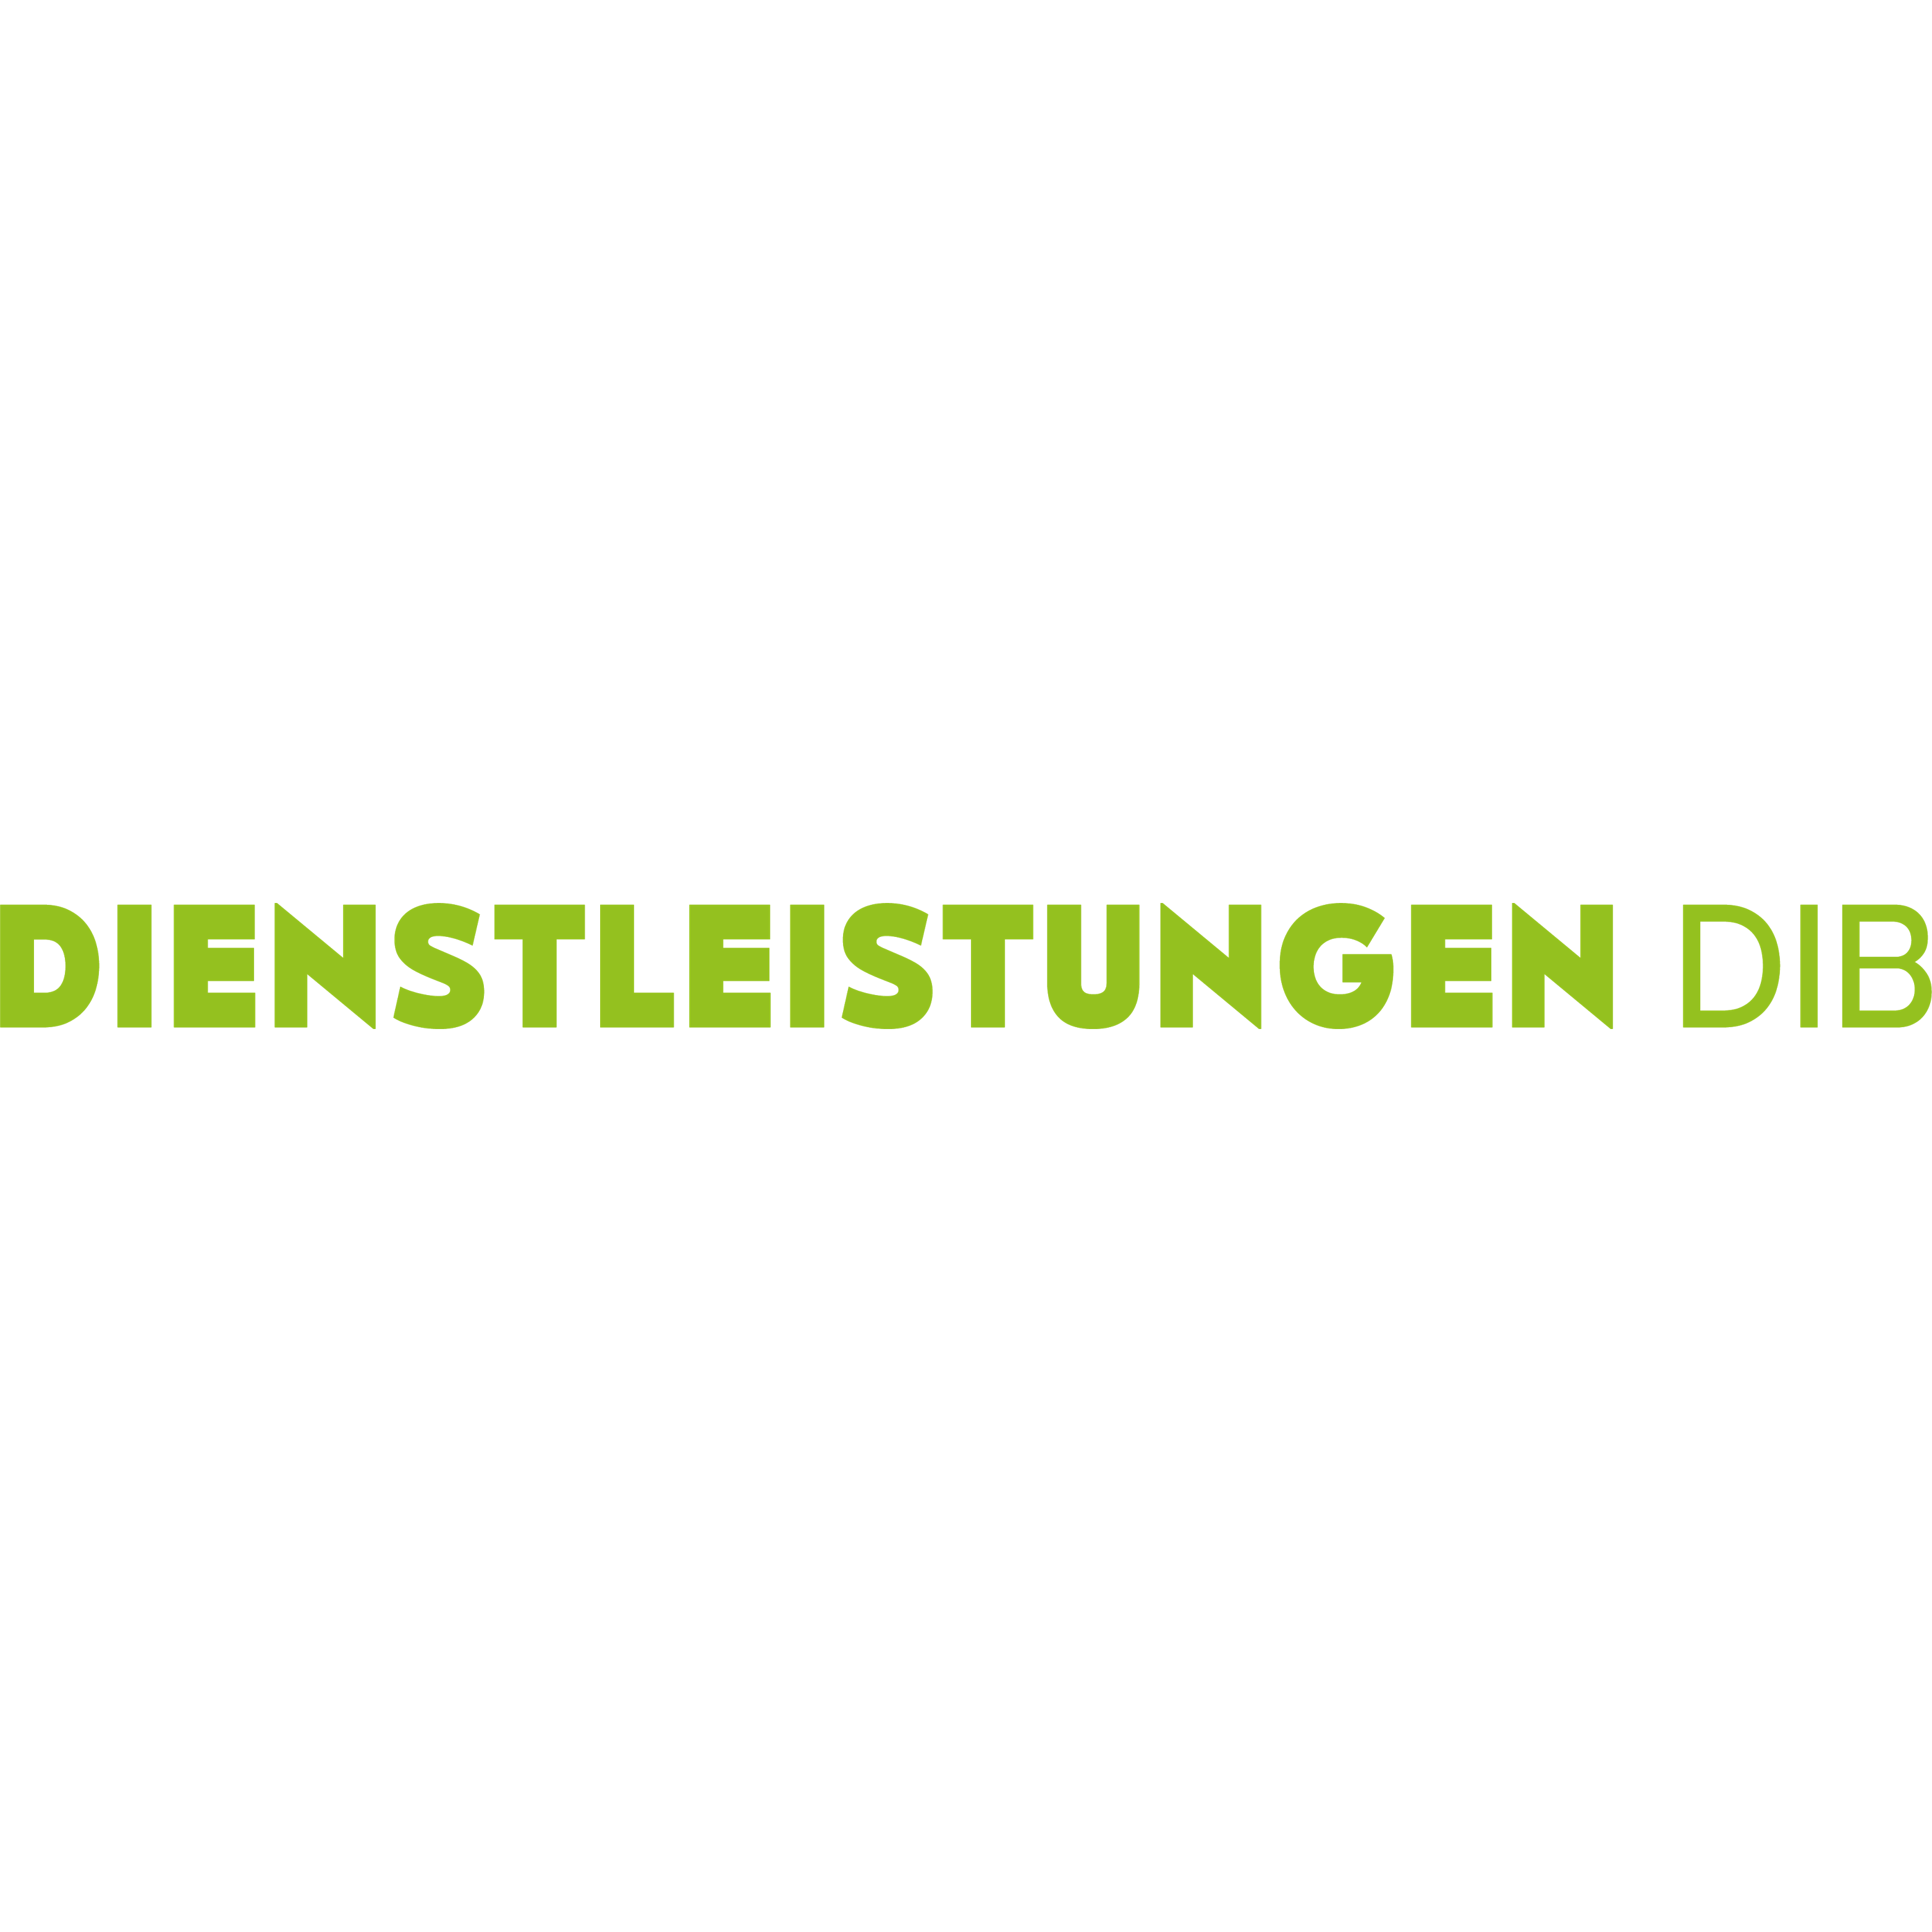 Dienstleistungen Dib in Wilhelmshaven - Logo